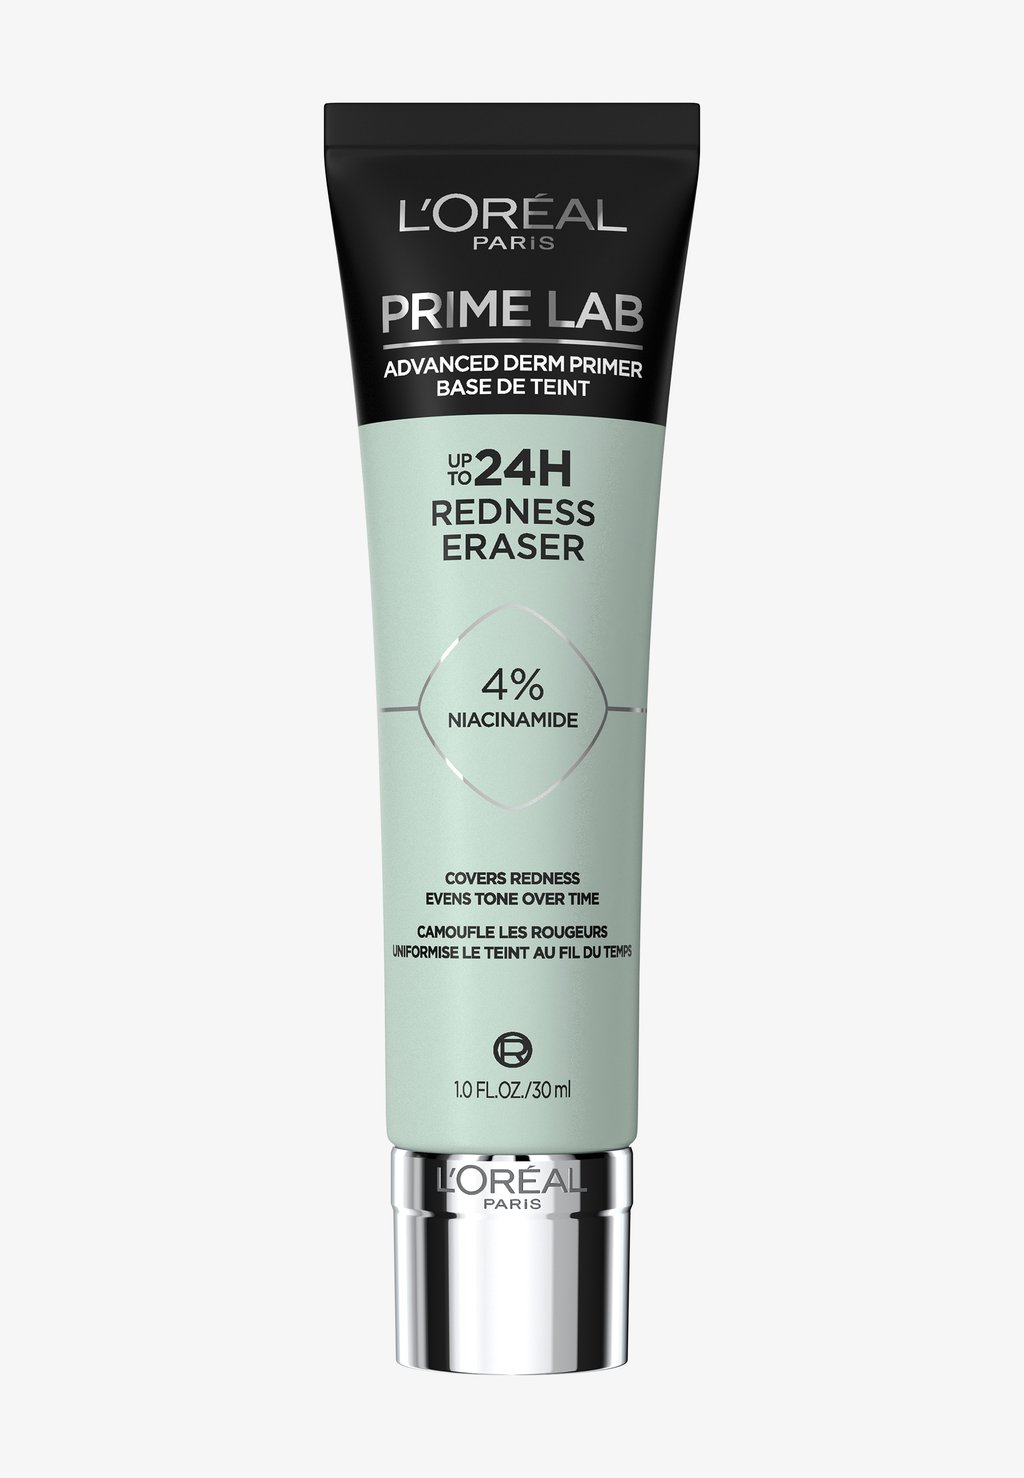 Праймер Prime Lab 24H L'Oréal Paris, цвет redness eraser